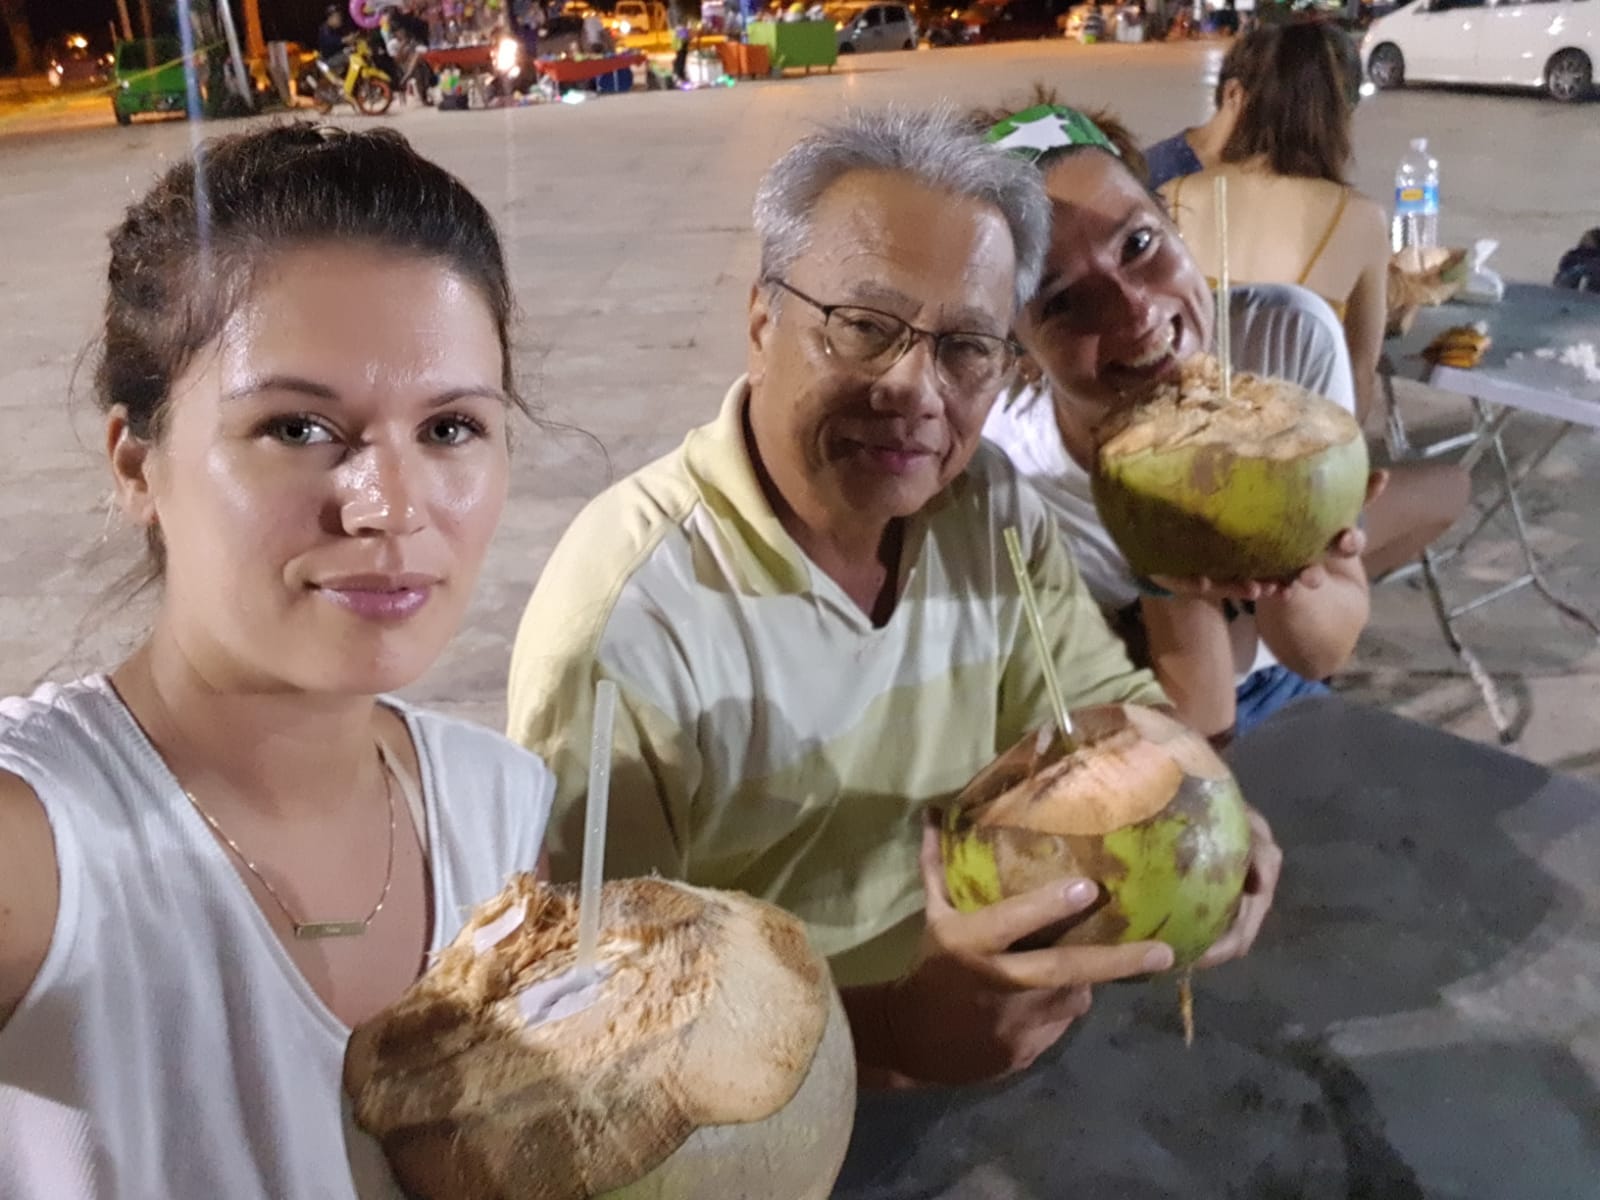 Kokosnootje op lokale markt met Uncle Eddie - Wat een bijzondere ontmoetingen.